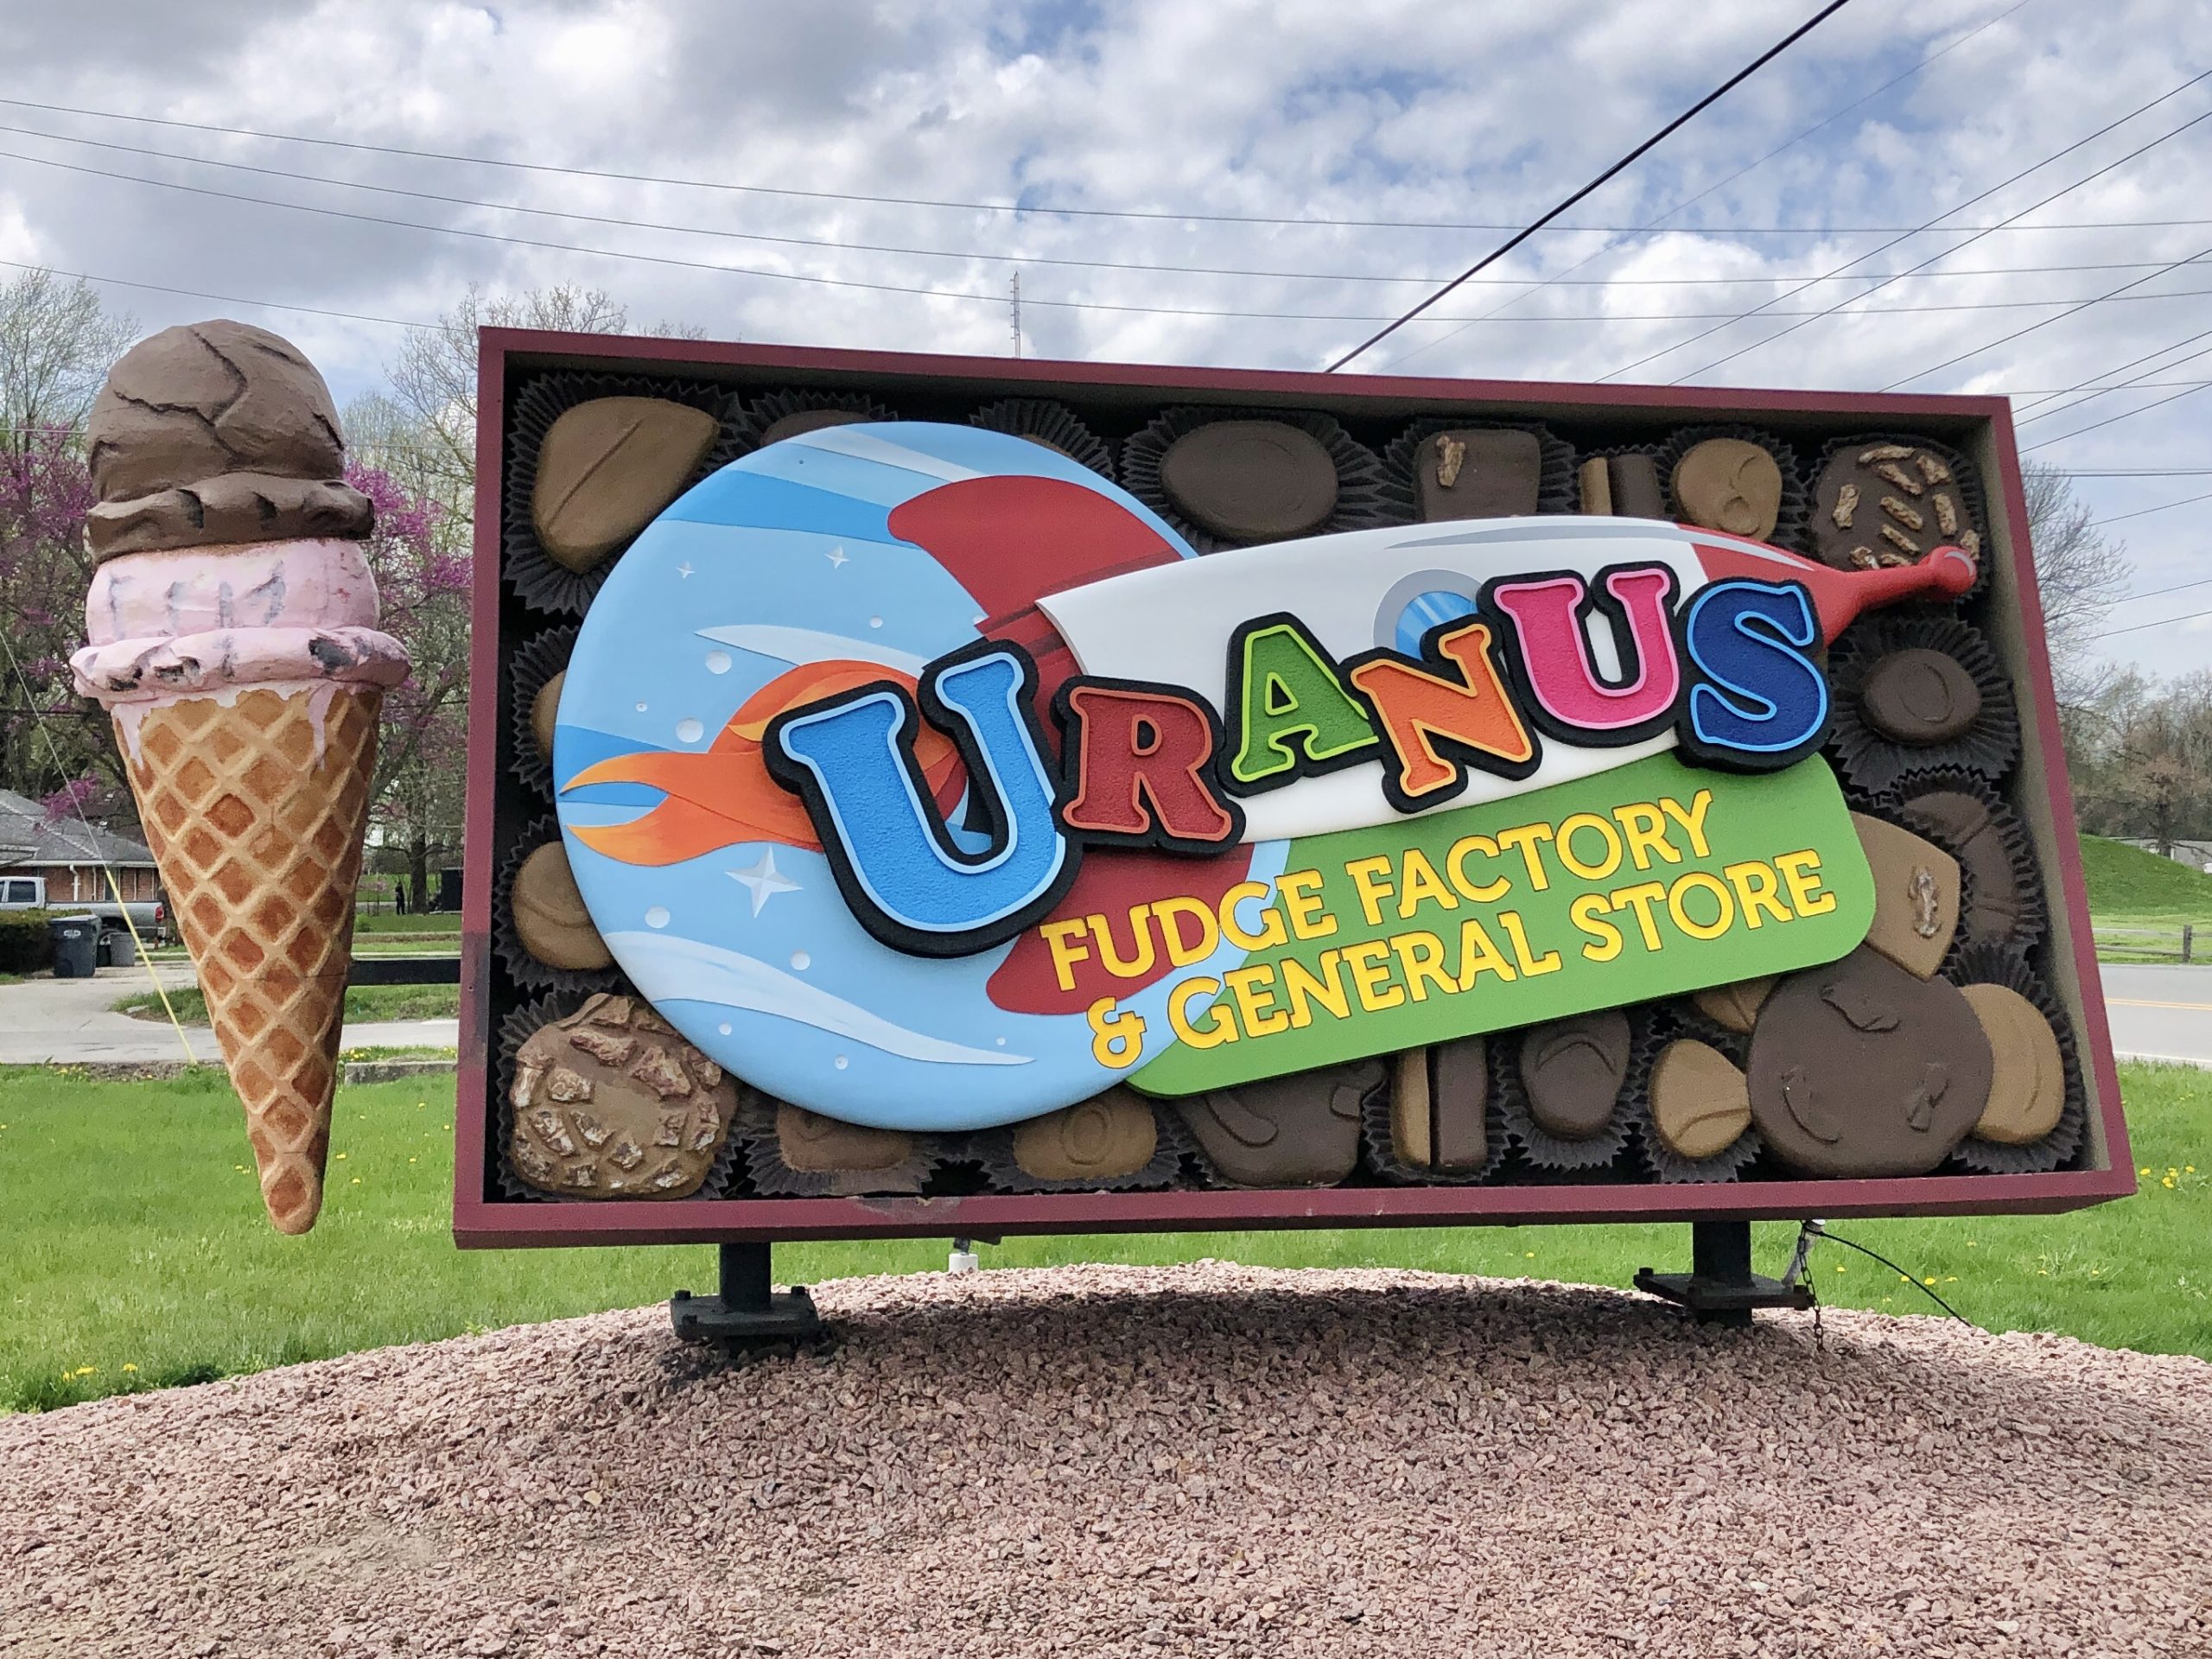 Uranus Indiana Fudge Factory in Anderson